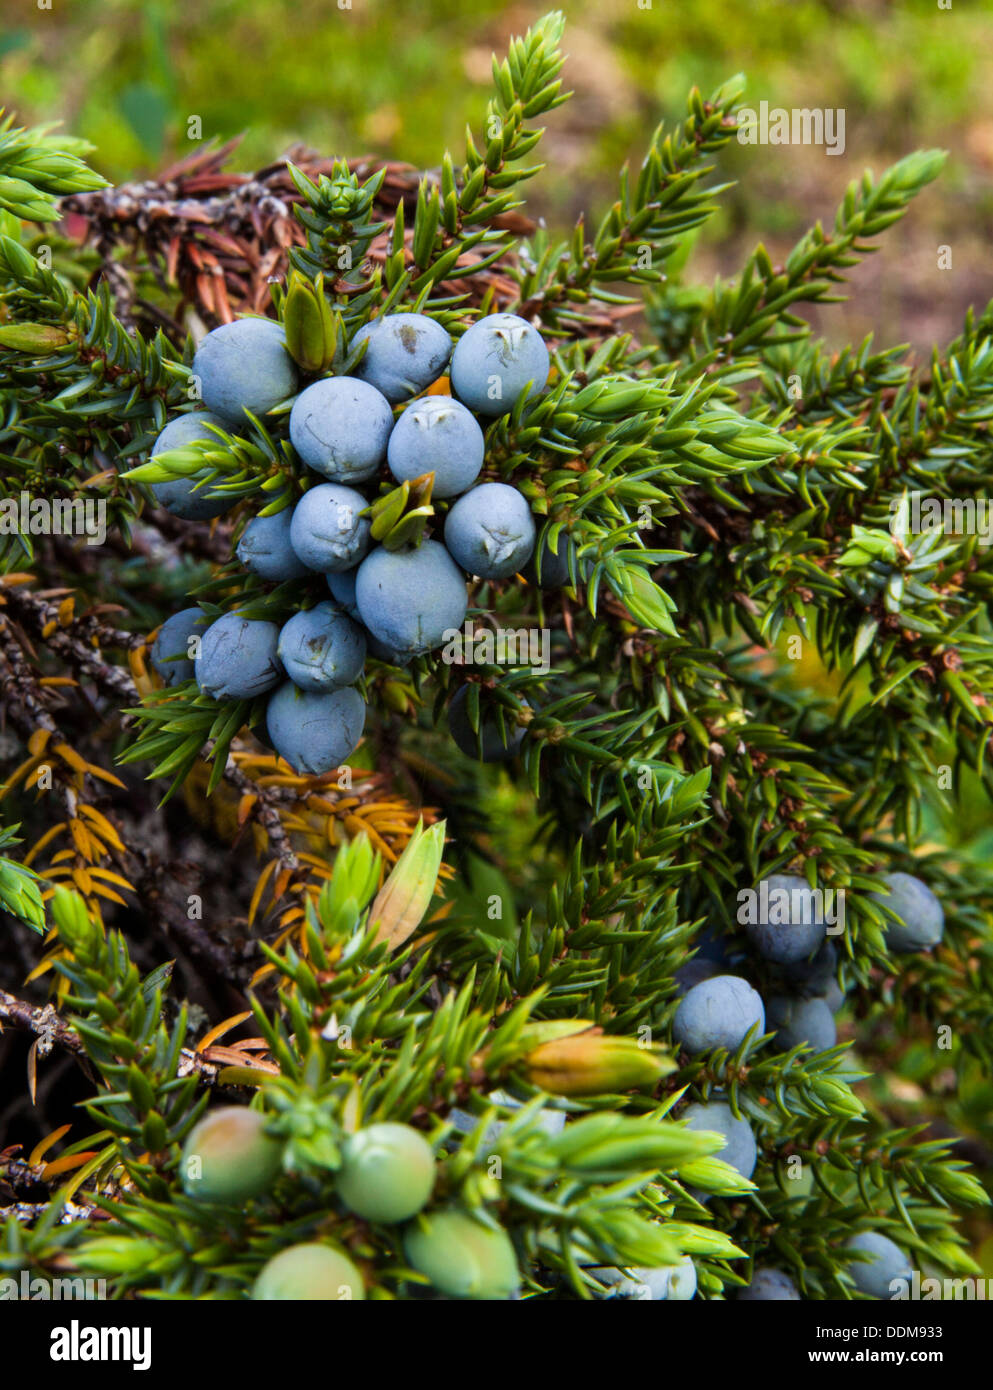 Common juniper (Juniperus communis) branches and berries Stock Photo